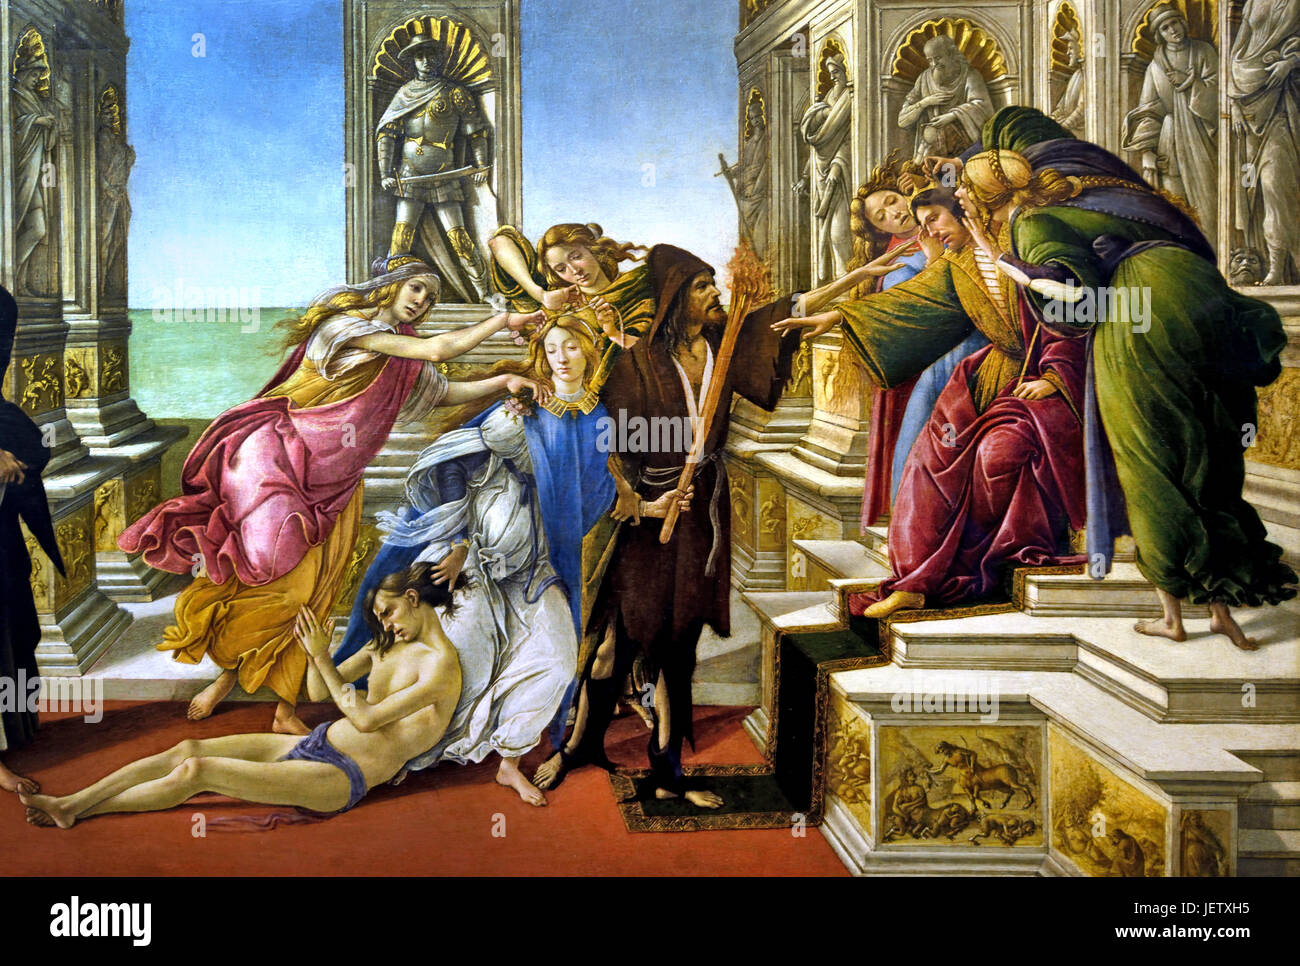 La calomnie d'Apelle 1495 Sandro Botticelli ( Alessandro di Mariano Filipepi ) Florence 1445-1510 peintre italien du début de la renaissance de l'école florentine. (Cette peinture Botticelli se sur la description d'une peinture par Apelle, un peintre grec de la période hellénistique. Apelle ) Banque D'Images